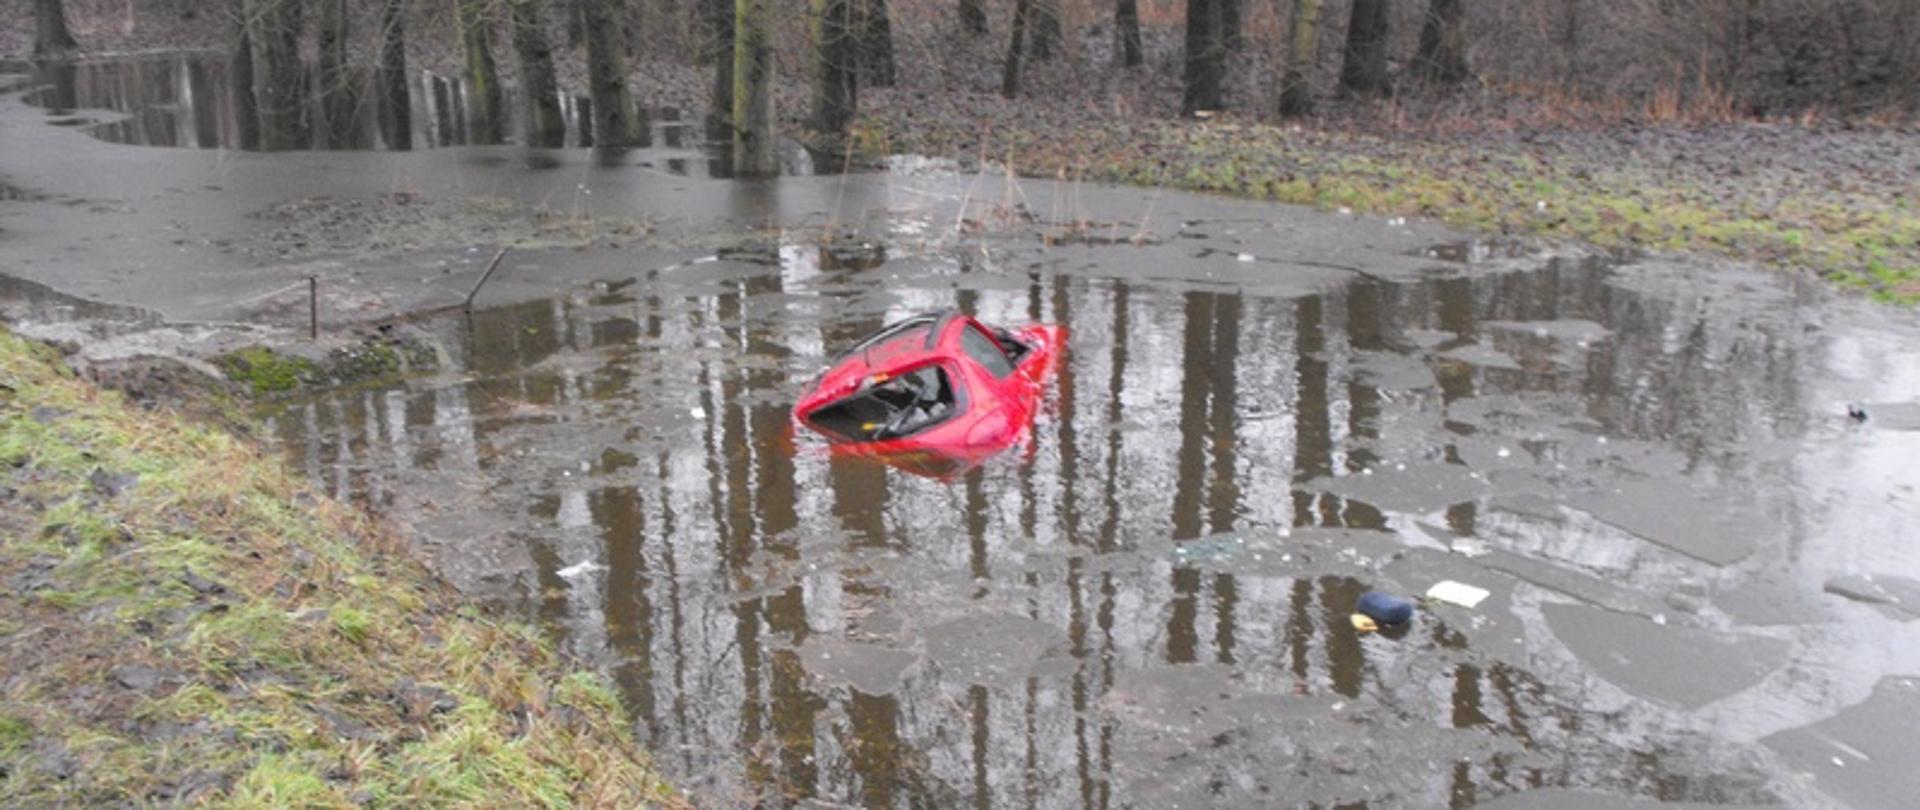 Zdjęcie przedstawia samochód osobowy w wodzie